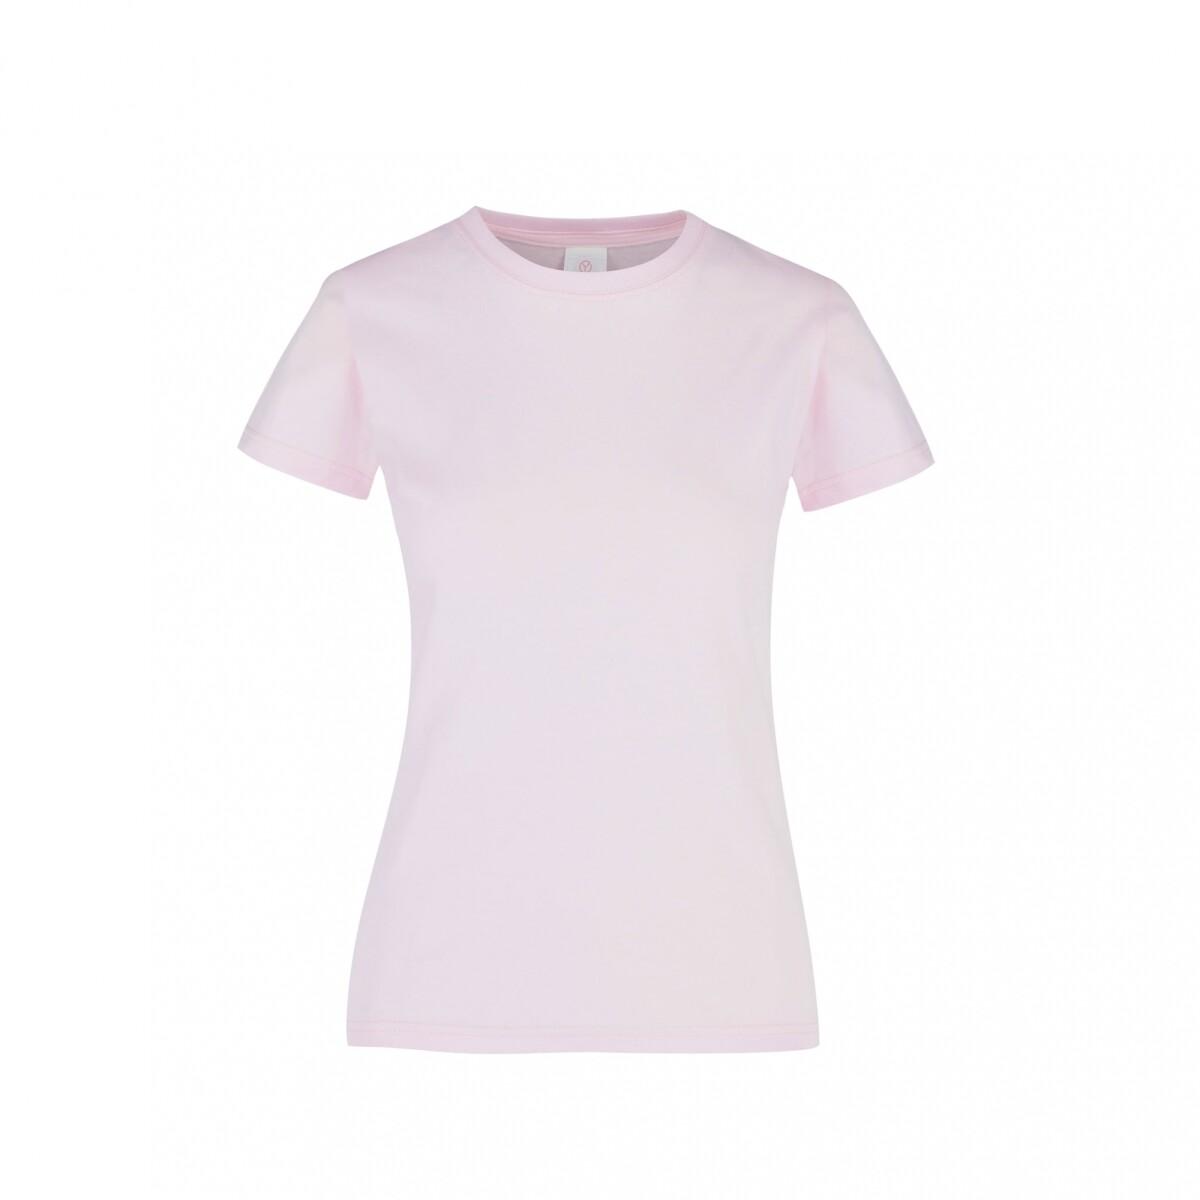 Camiseta a la base dama - Rosa pastel 